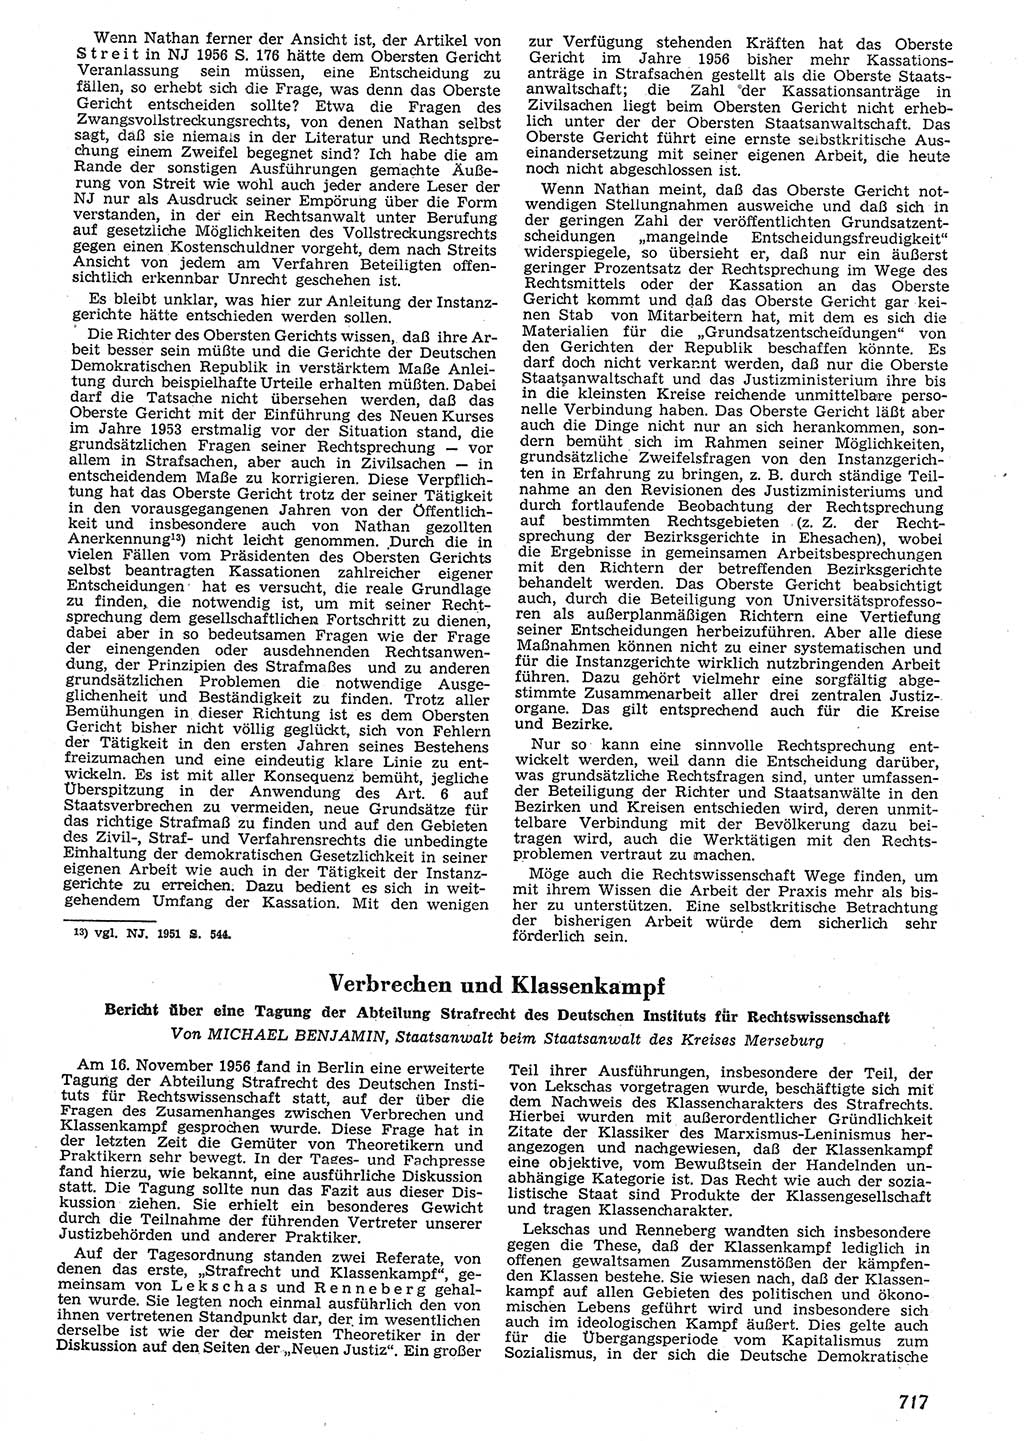 Neue Justiz (NJ), Zeitschrift für Recht und Rechtswissenschaft [Deutsche Demokratische Republik (DDR)], 10. Jahrgang 1956, Seite 717 (NJ DDR 1956, S. 717)